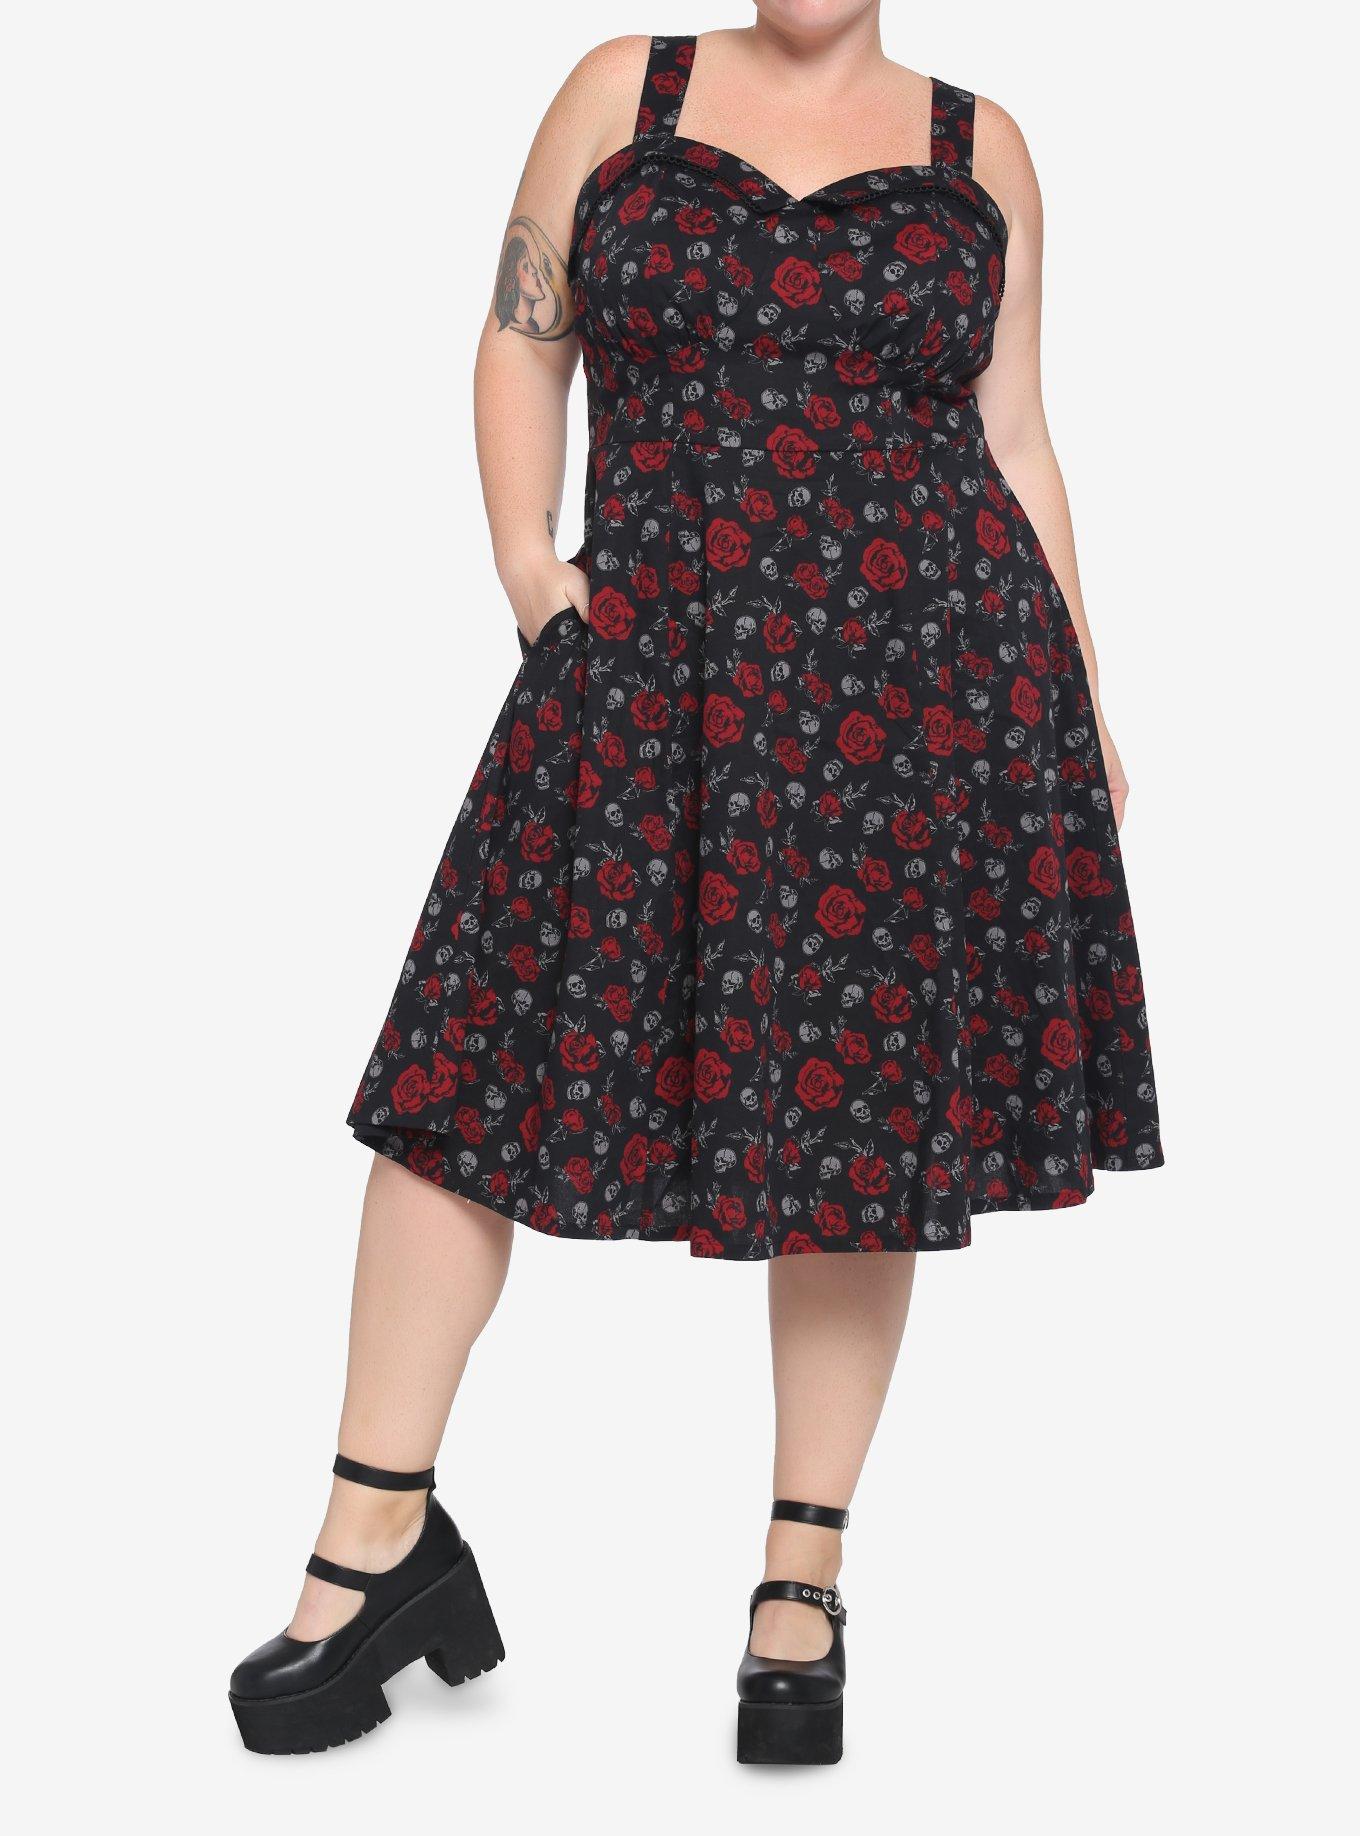 Skulls & Red Roses Retro Dress Plus Size, SKULL ROSES, alternate